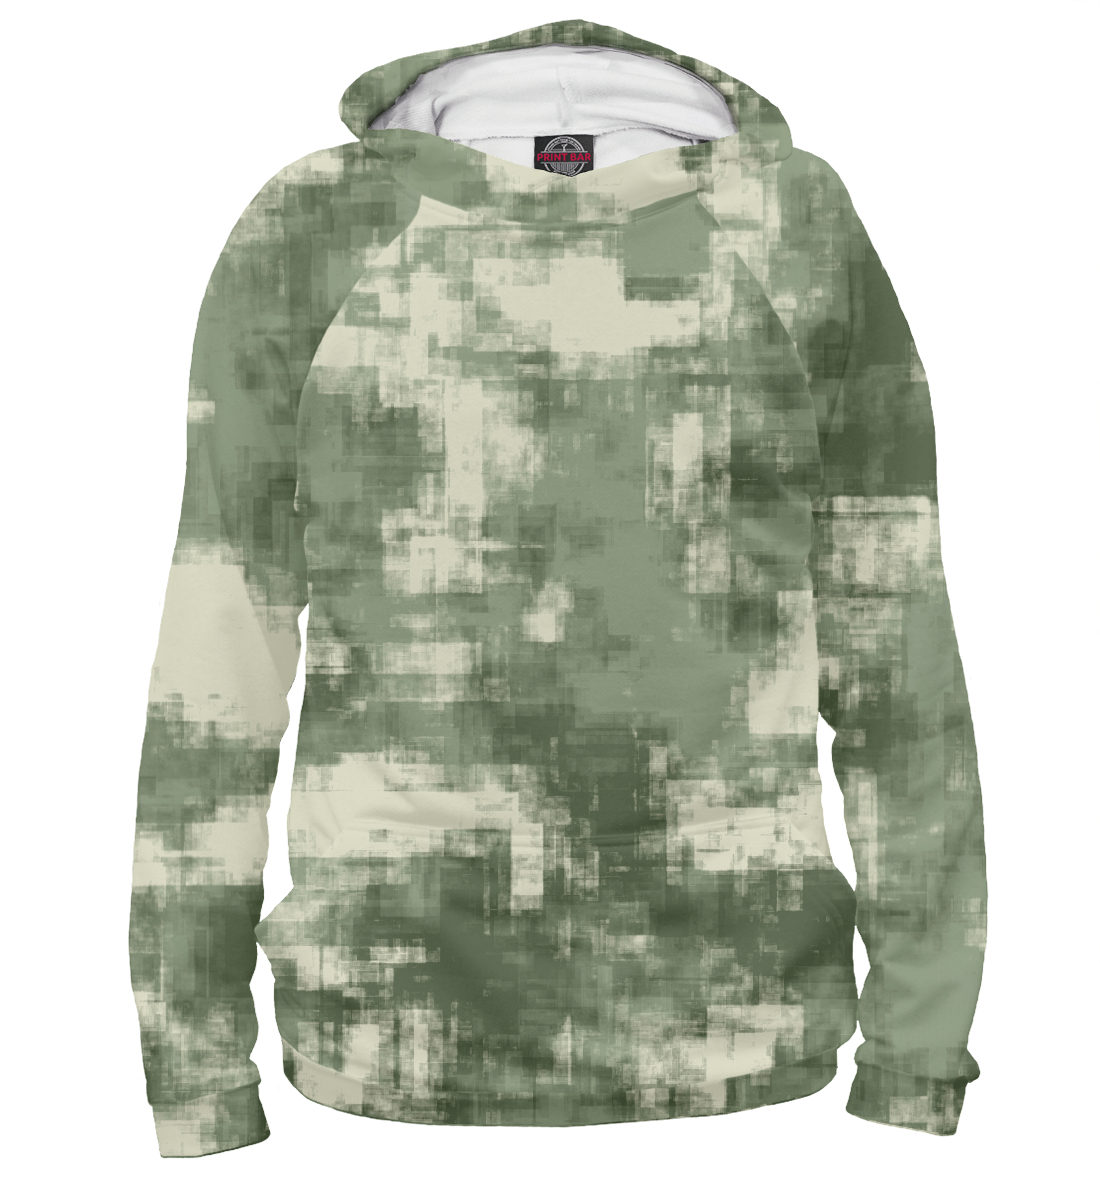 Женский Худи Военный камуфляж- одежда для мужчин и женщин, артикул CMF-442561-hud-1mp